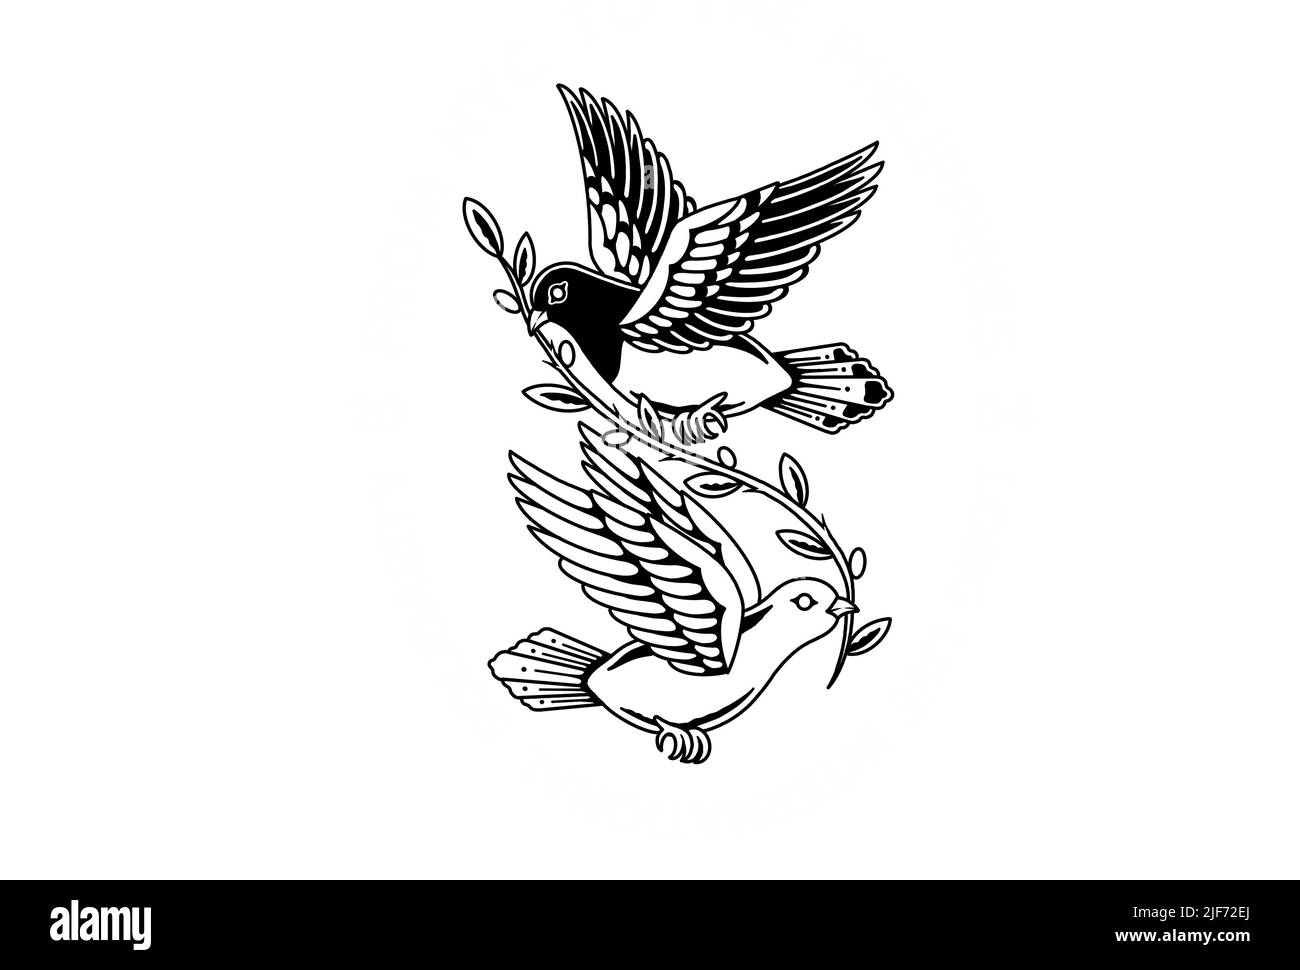 Old School tatouage style conception graphique dessin oiseaux colombes Banque D'Images